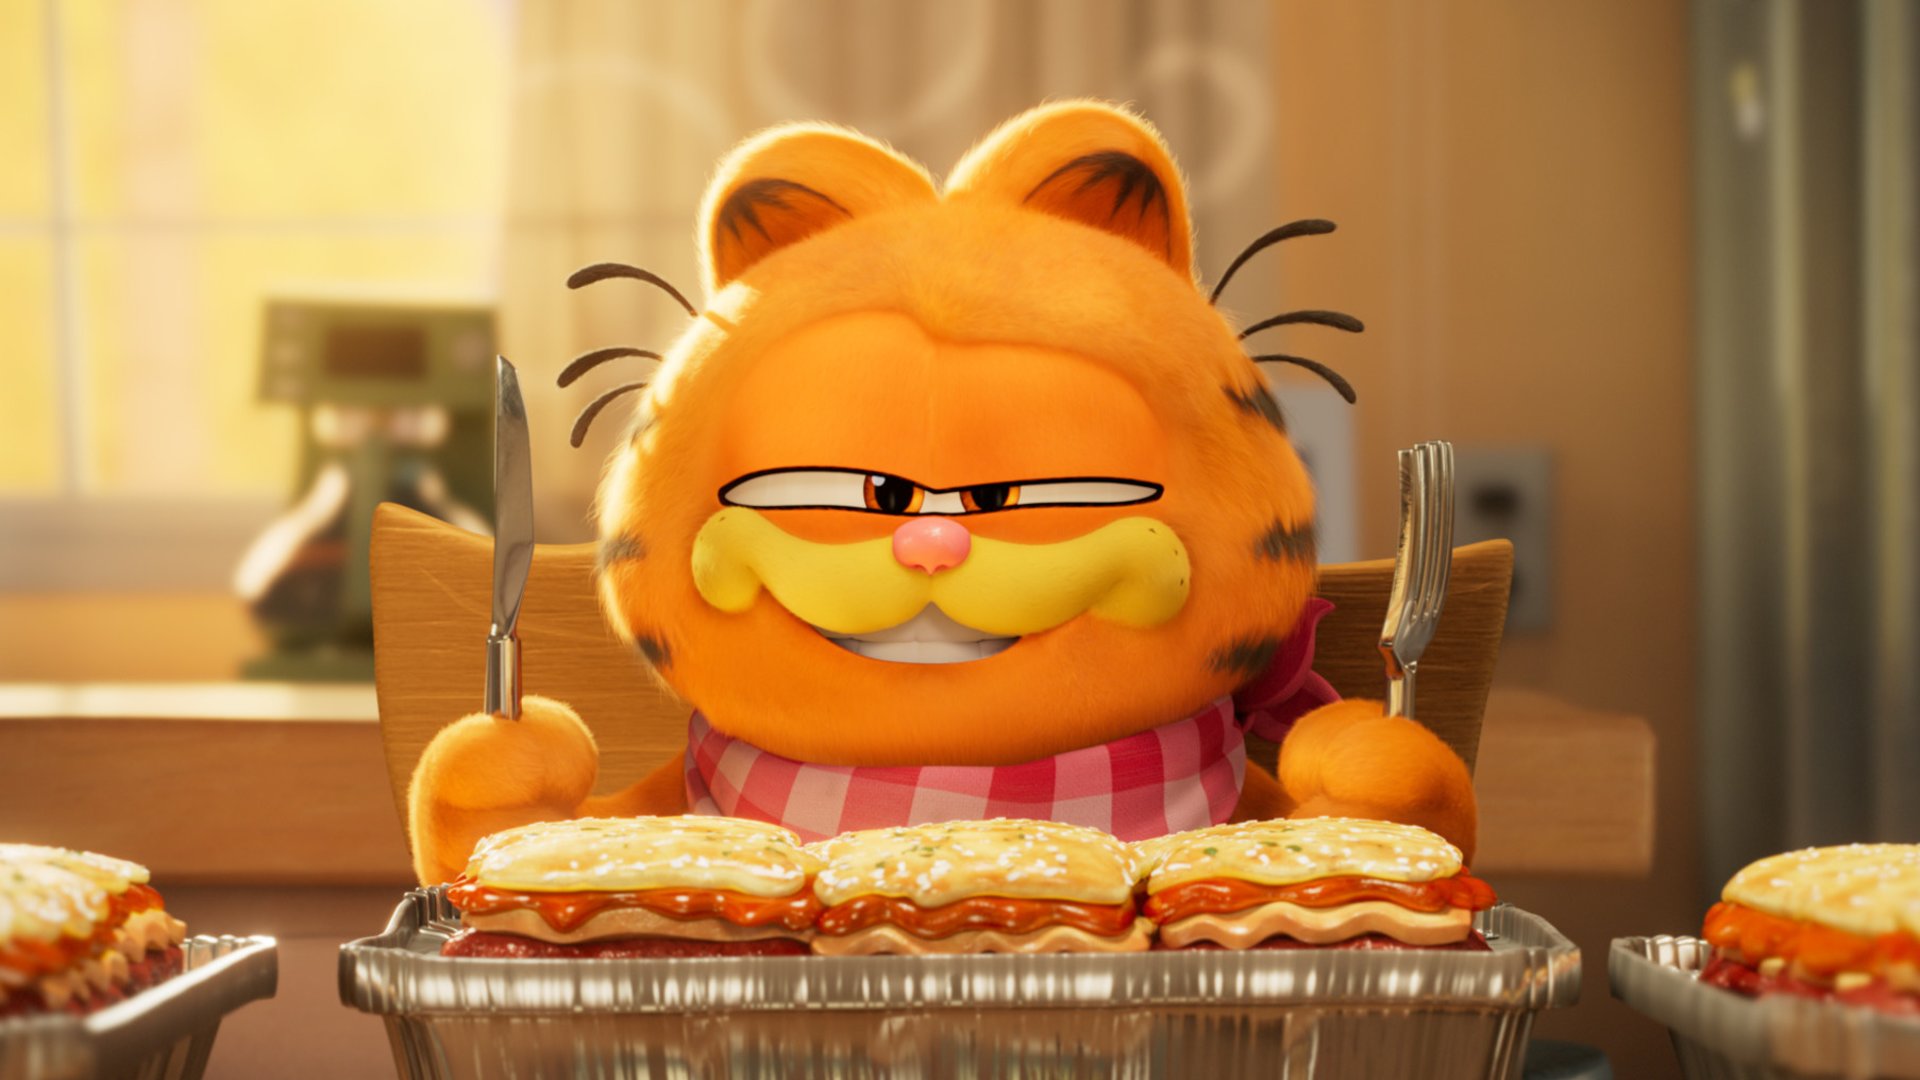 Garfield – Eine Extra Portion Abenteuer